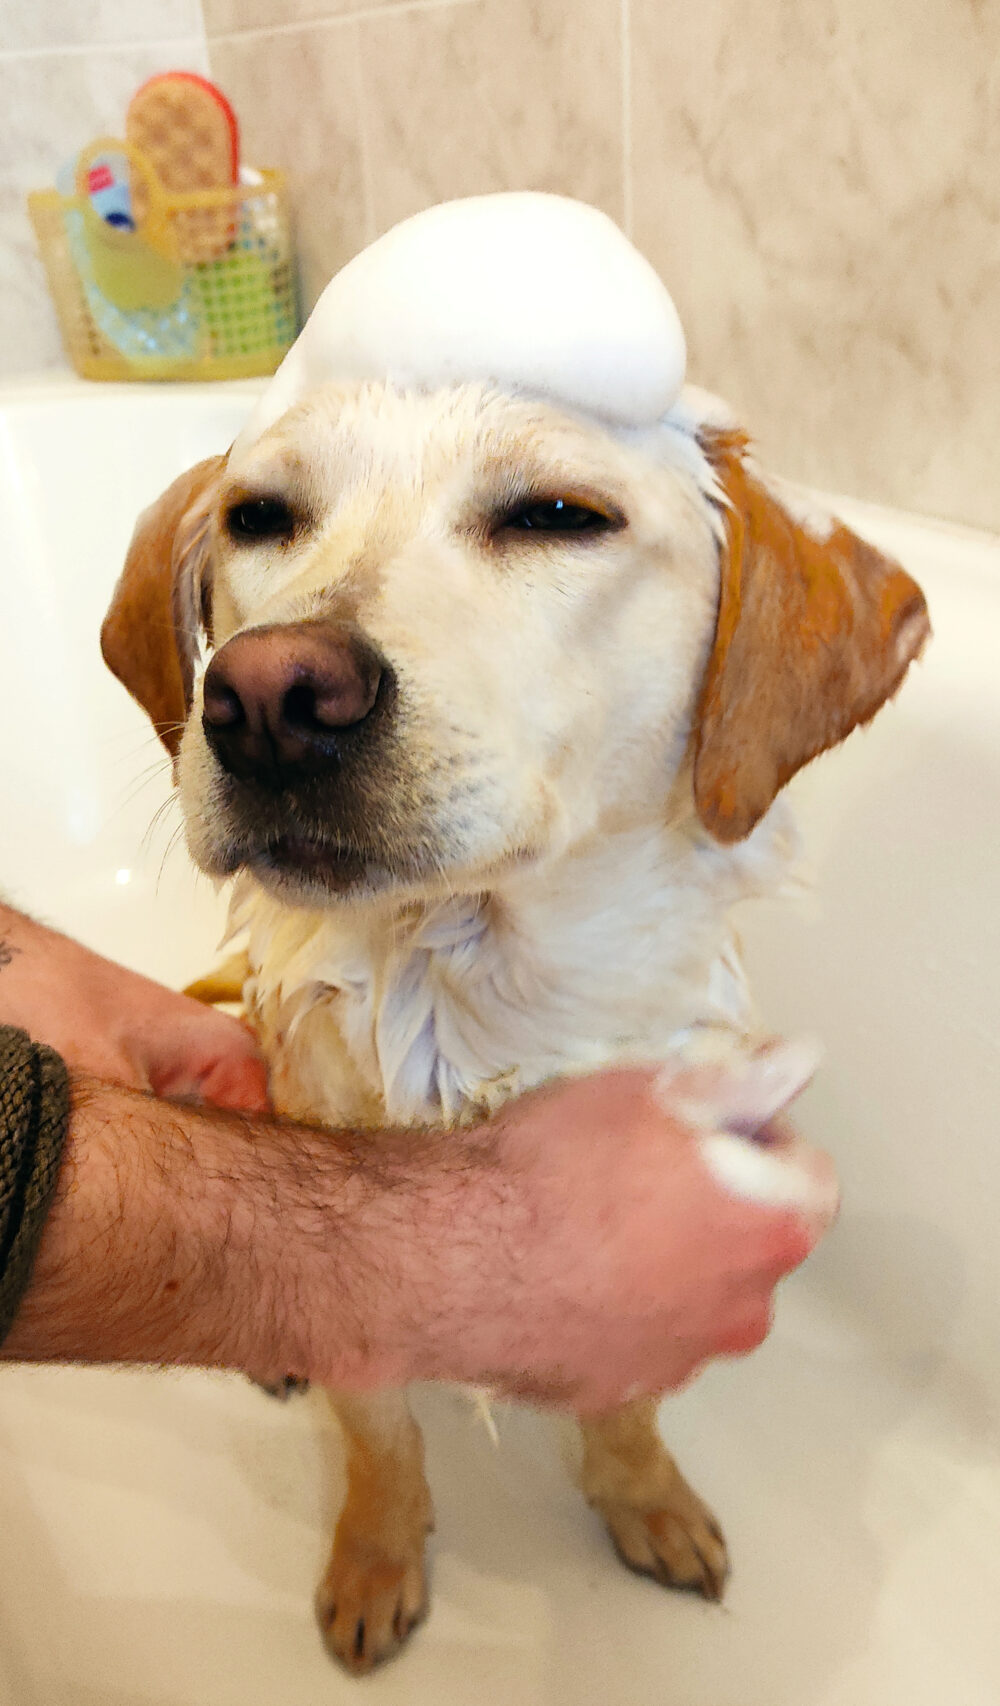 il bagnetto del cucciolo